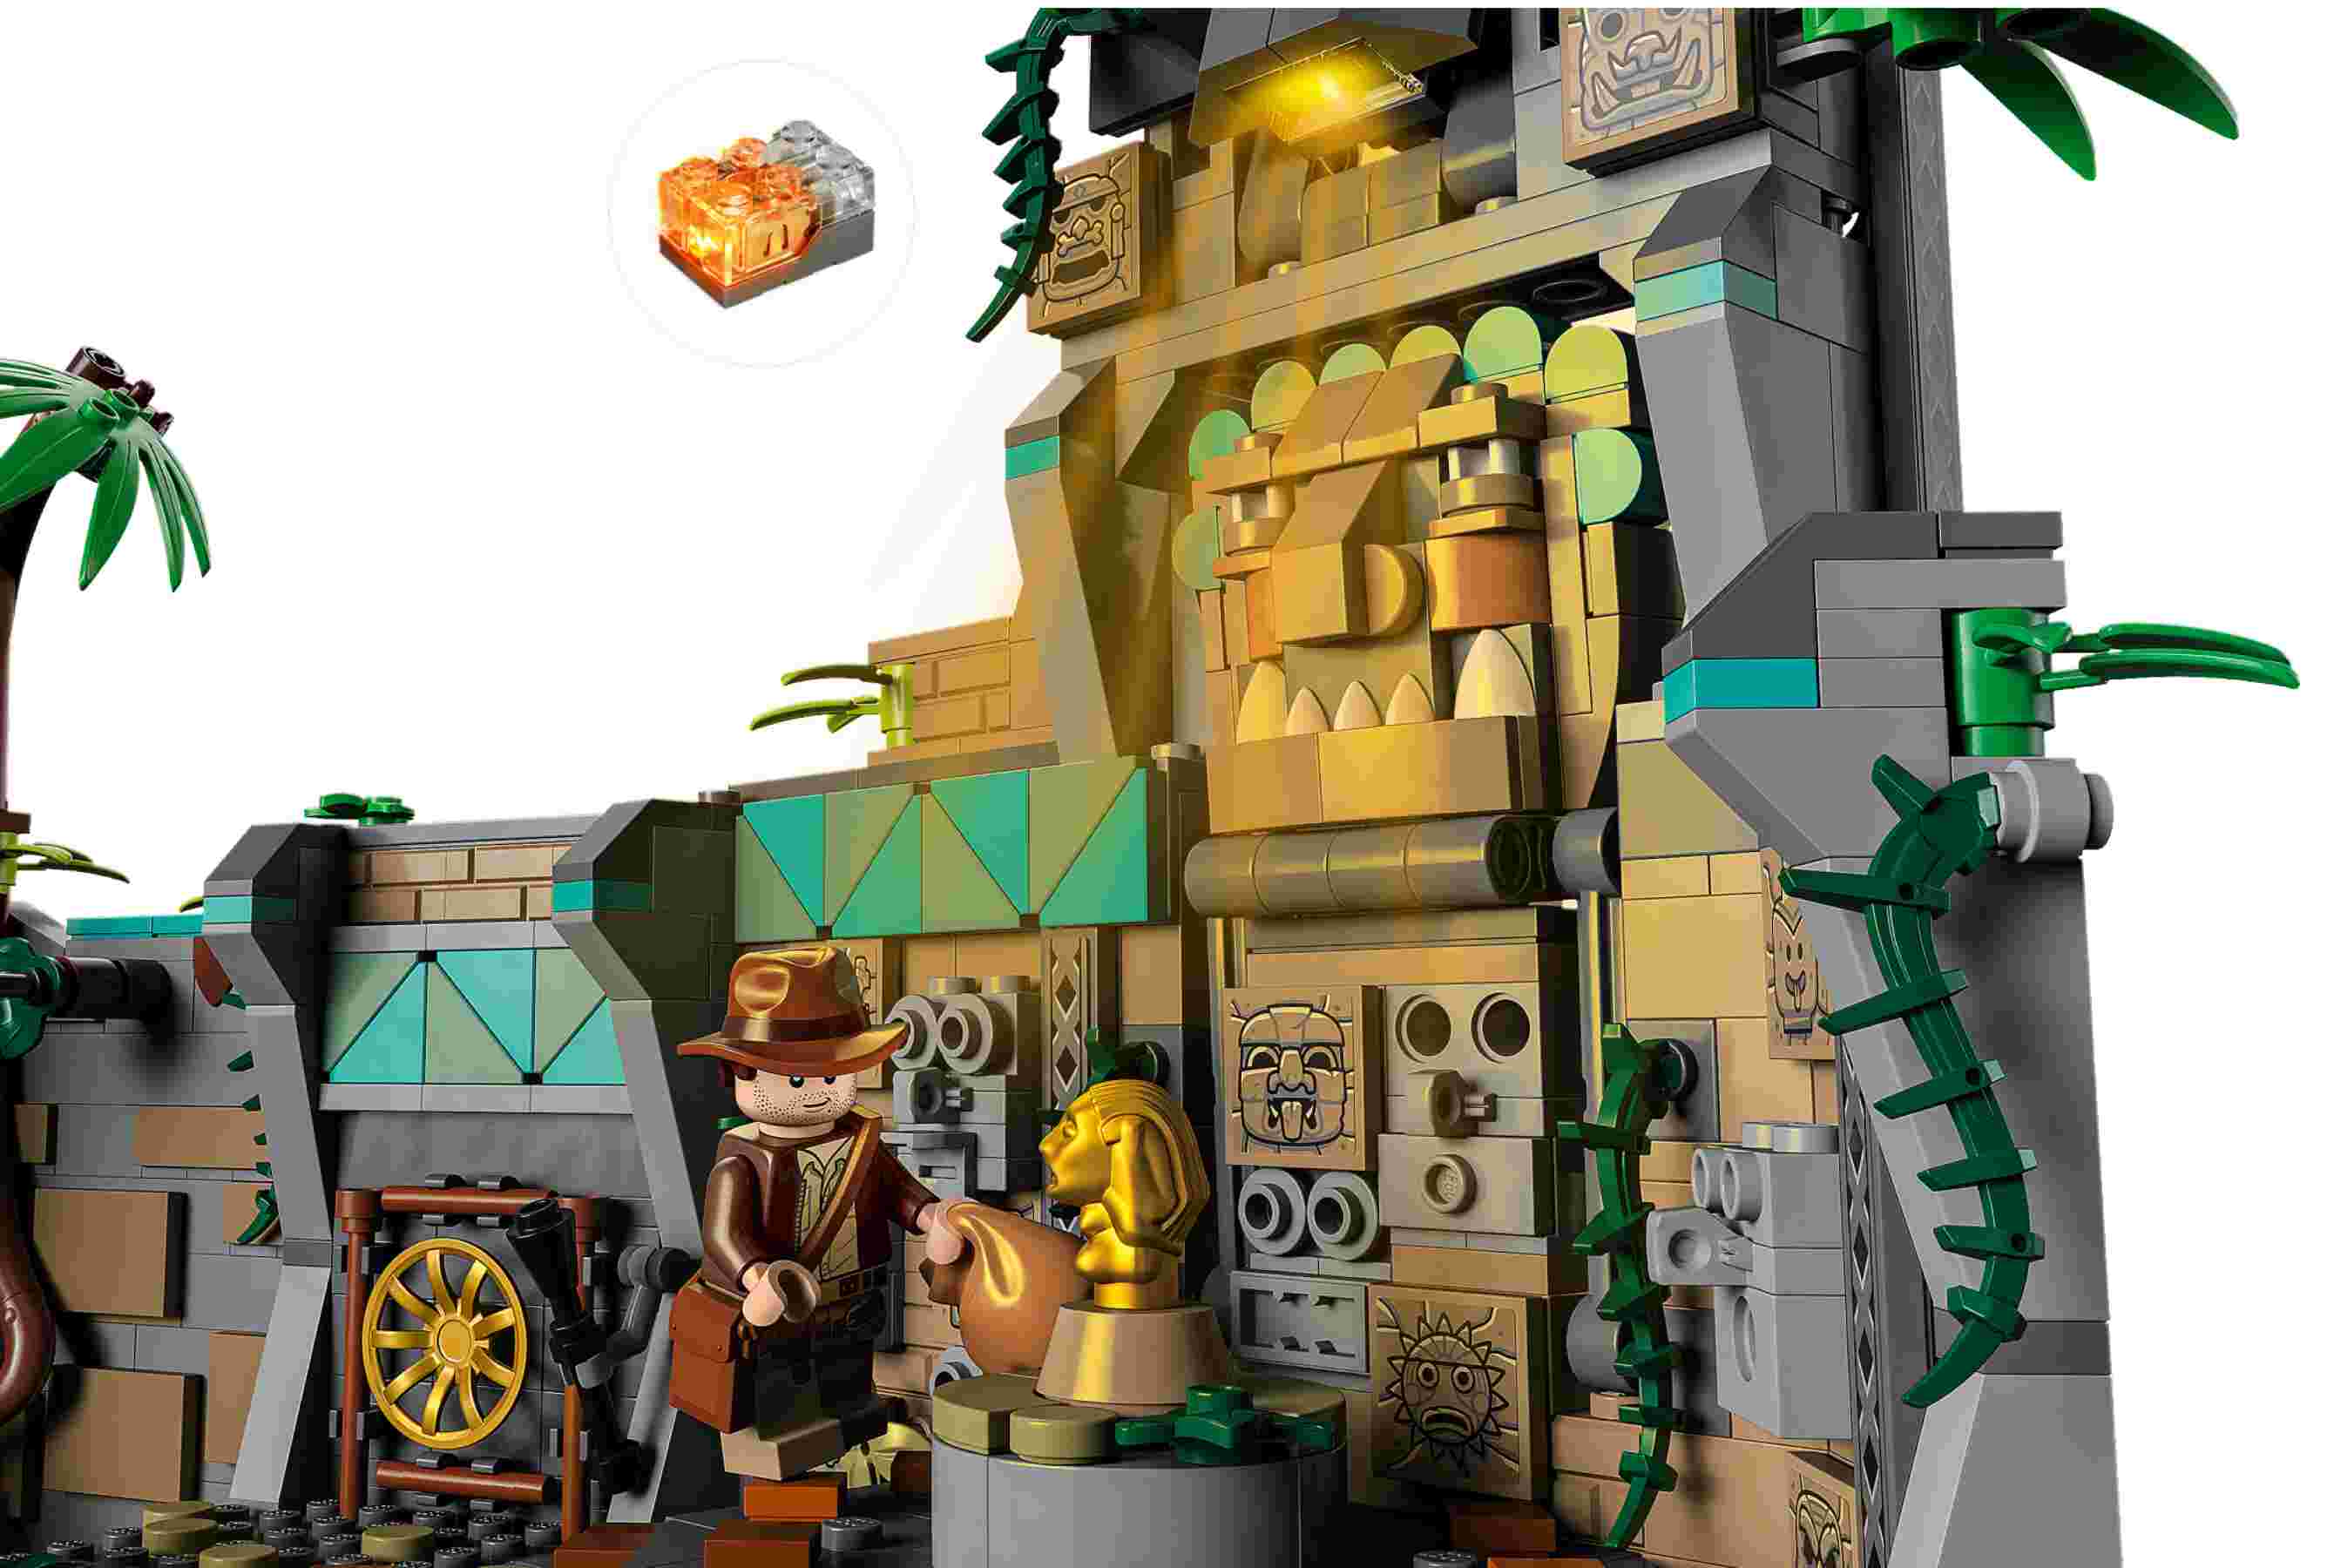 LEGO 77015 Indiana Jones Tempel des goldenen Götzen, 4 Minifiguren, interaktiv